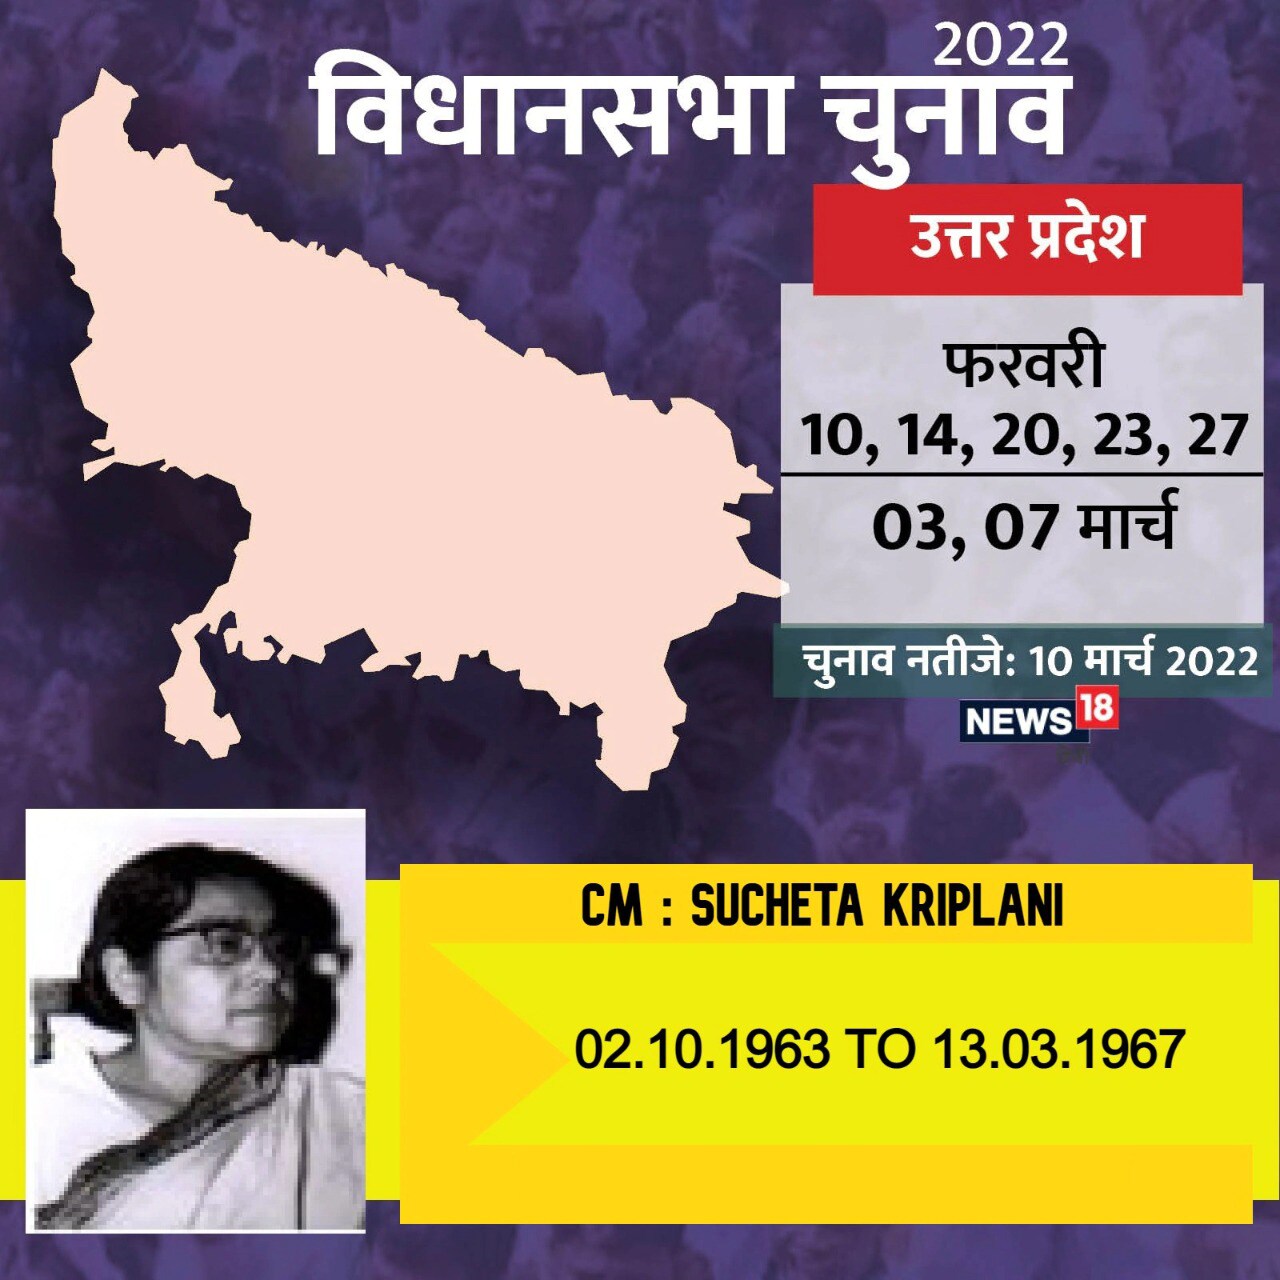  यूपी की पहली महिला मुख्यमंत्री के रूप में सुचेता कृपलानी ने 2 अक्टूबर 1963 में शपथ ली थी. उनका मूल नाम सुचेता मजूमदार था. चौथे मुख्यमंत्री के रूप में सुचेता कृपलानी का कार्यकाल 13 मार्च 1967 तक रहा. पंजाब के अंबाला के बंगाली ब्राह्मण परिवार में उनका जन्म हुआ था. दिल्ली के सेंट स्टीफेंस कॉलेज से पढ़ीं सुचेता ने अपनी ऊम्र से 20 साल बड़े गांधीवादी नेता जेबी कृपलानी को जीवनसाथी बनाया था. 1 दिसंबर 1974 को हृदयगति रुक जाने से सुचेता कृपलानी का निधन हुआ.